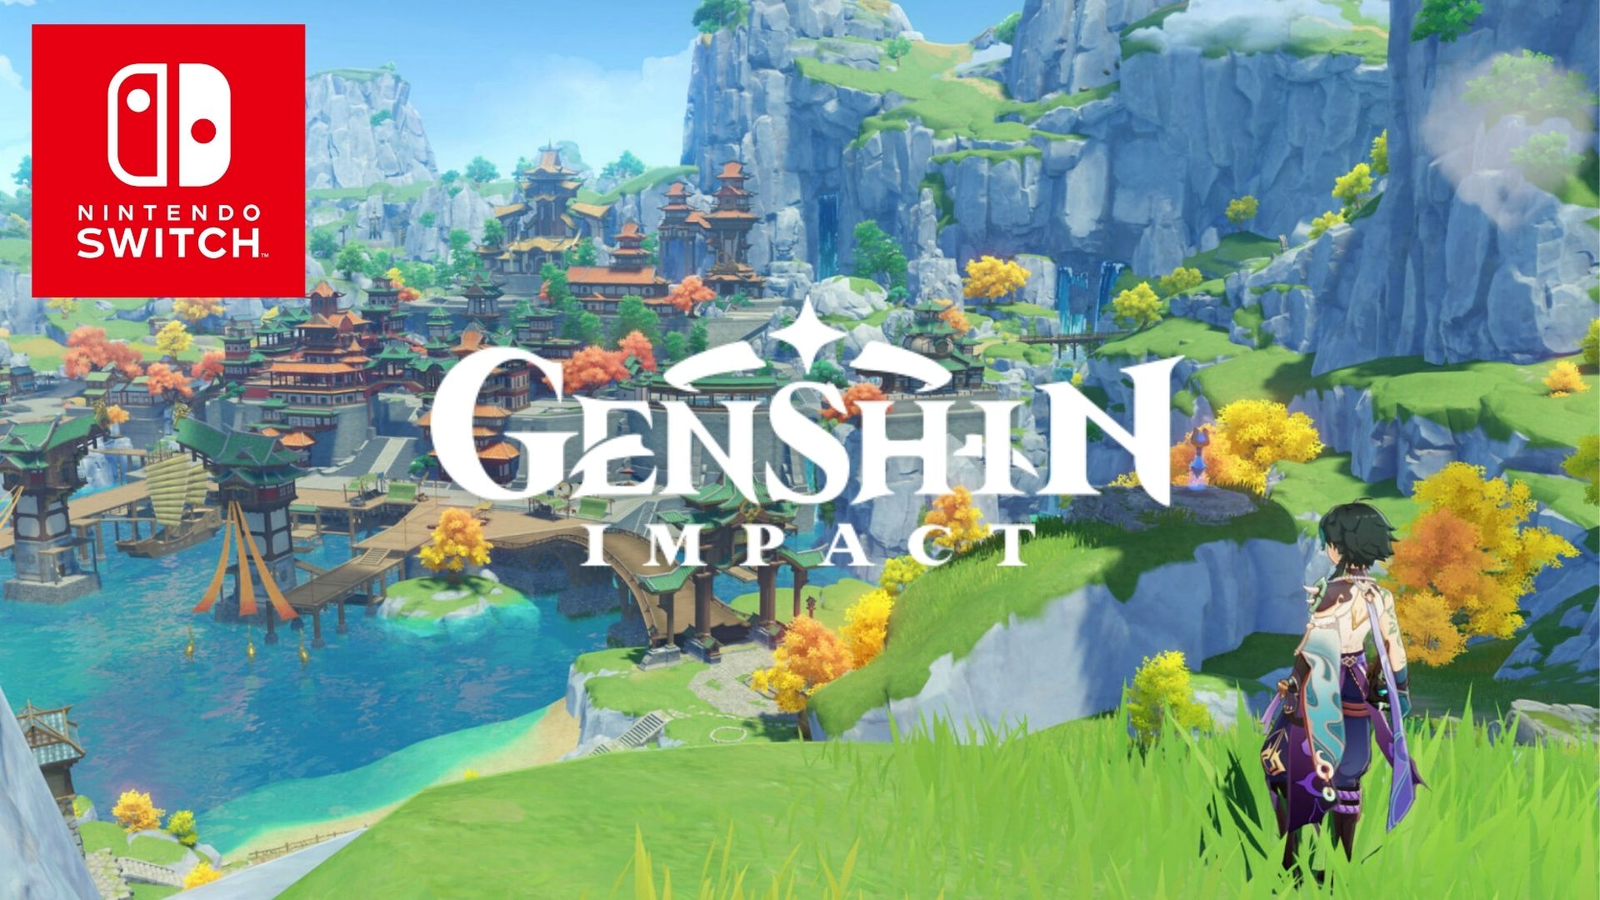 Genshin Impact é anunciado com lançamento em 2020